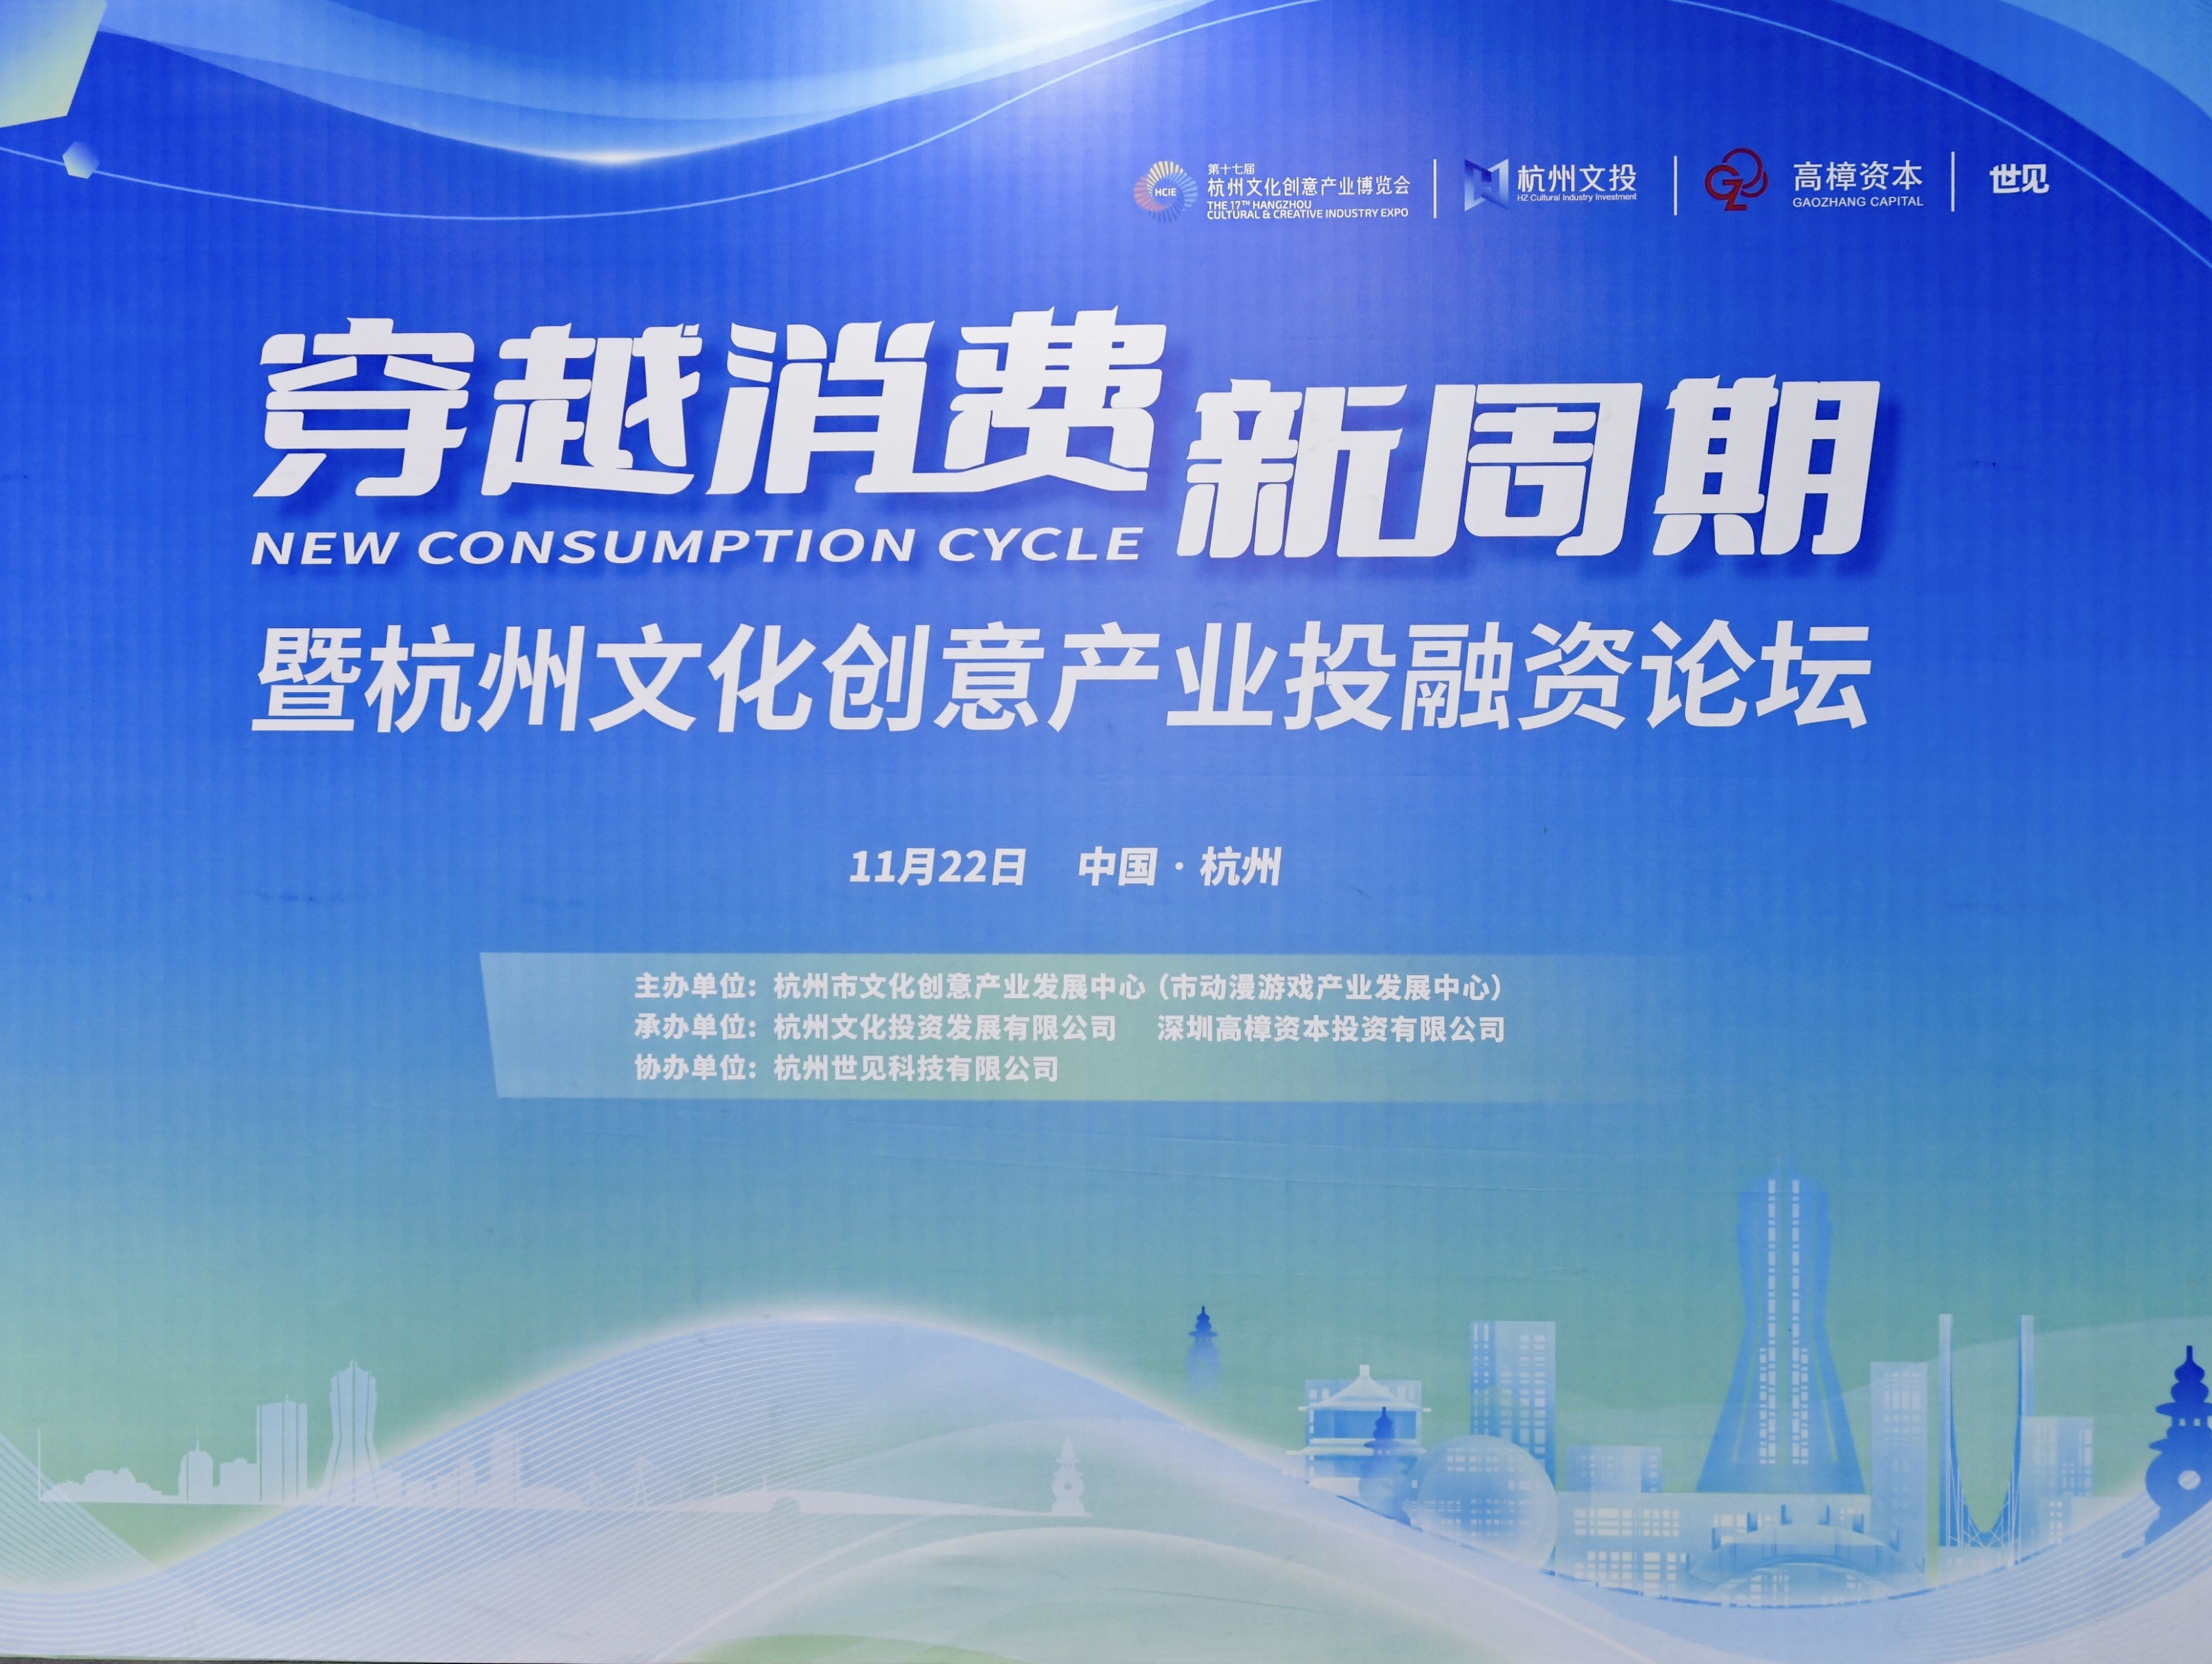  2023杭州文化创意产业投融资论坛深入探讨穿越消费新周期路径举措